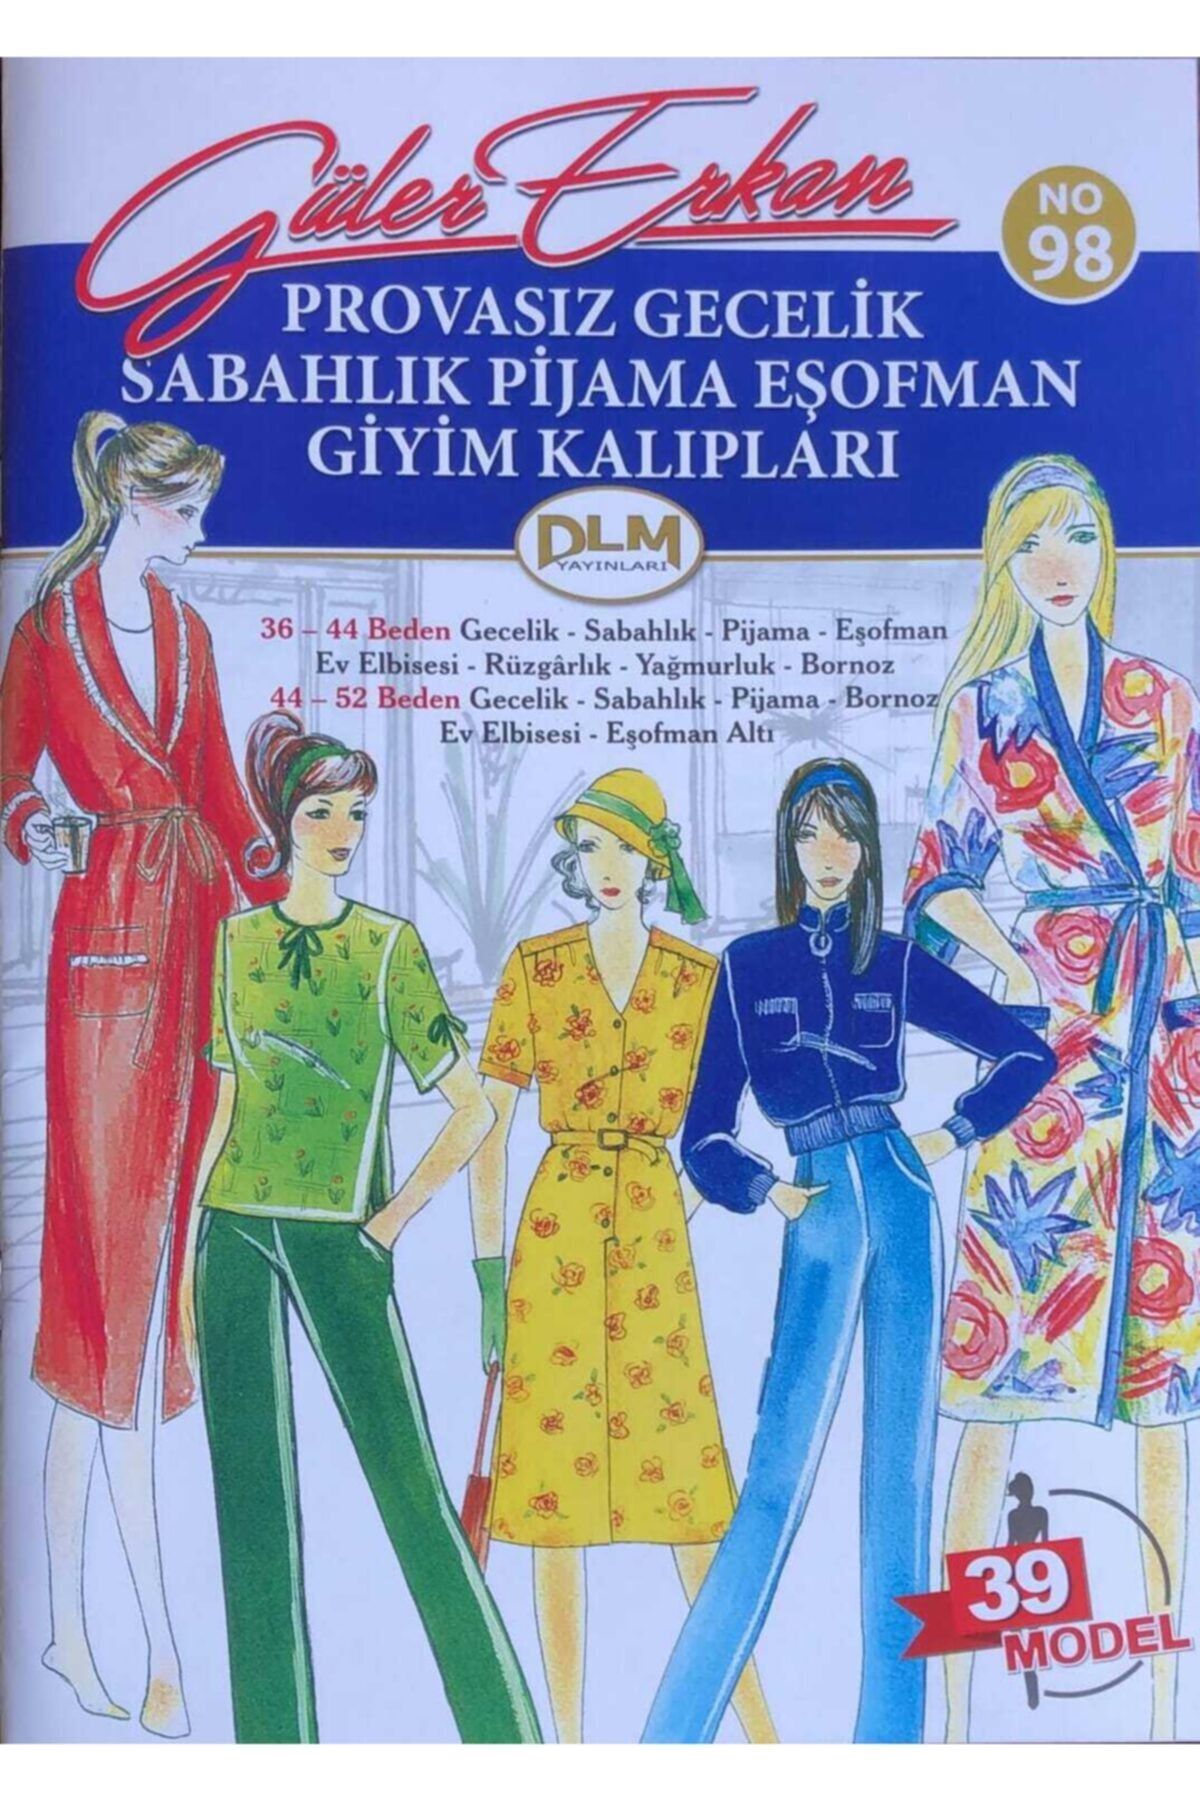 Dilem Yayınları Güler Erkan Provasız Gecelik Sabahlık Pijama Eşofman No 98